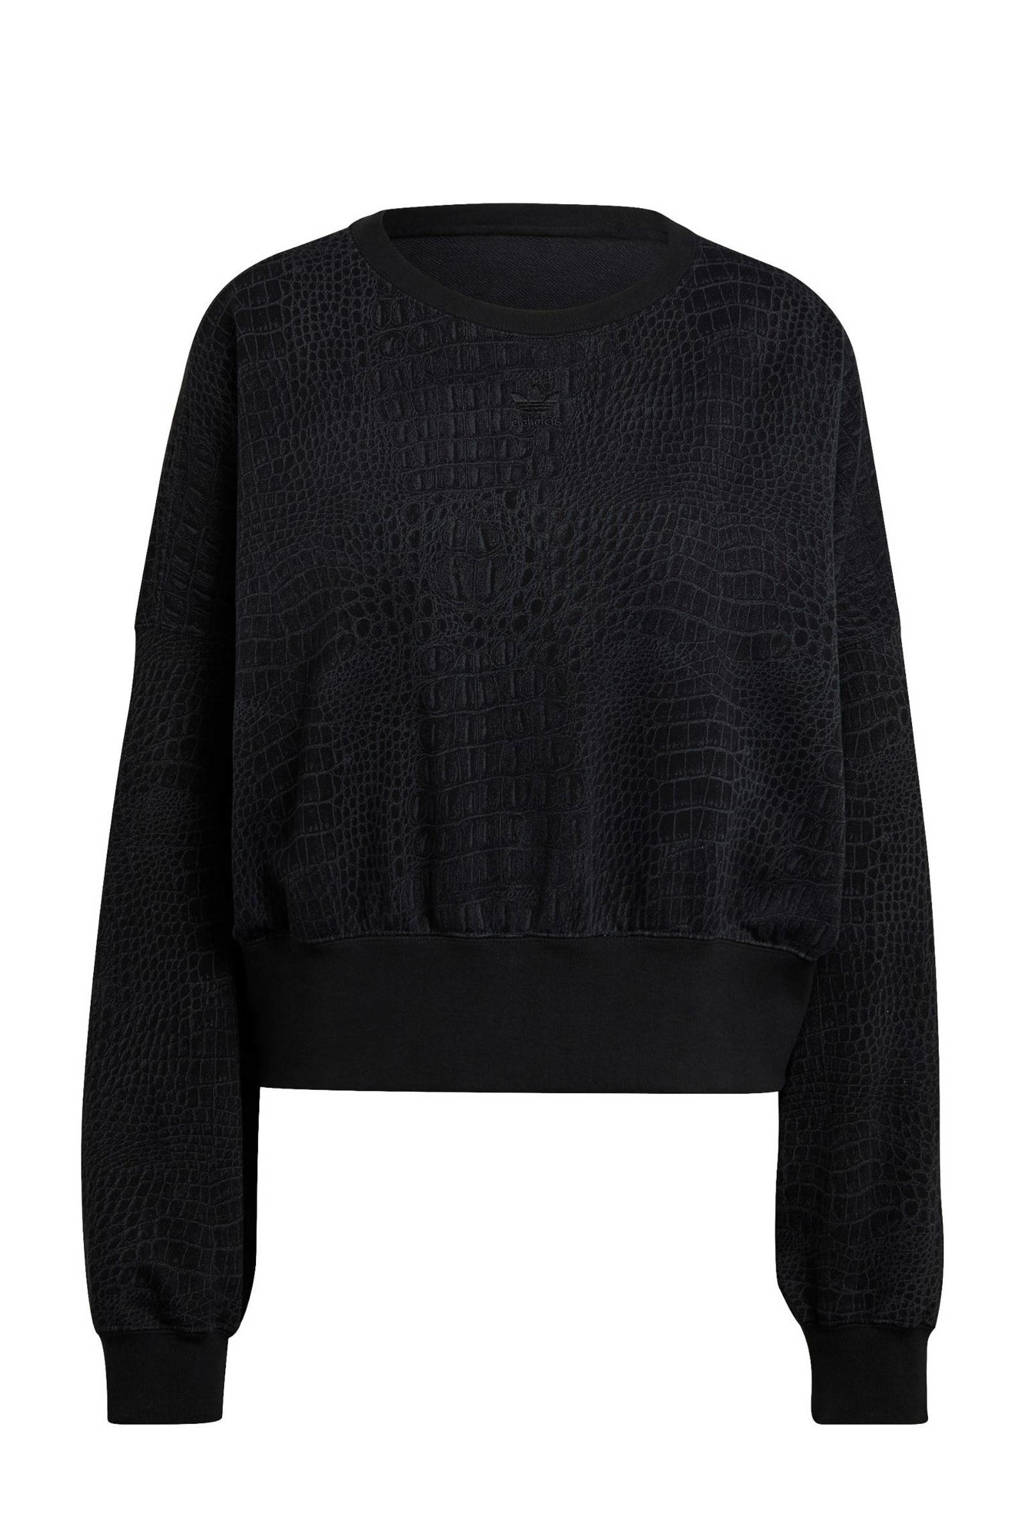 adidas Originals Adicolor fleece sweater zwart/antraciet, Zwart/antraciet